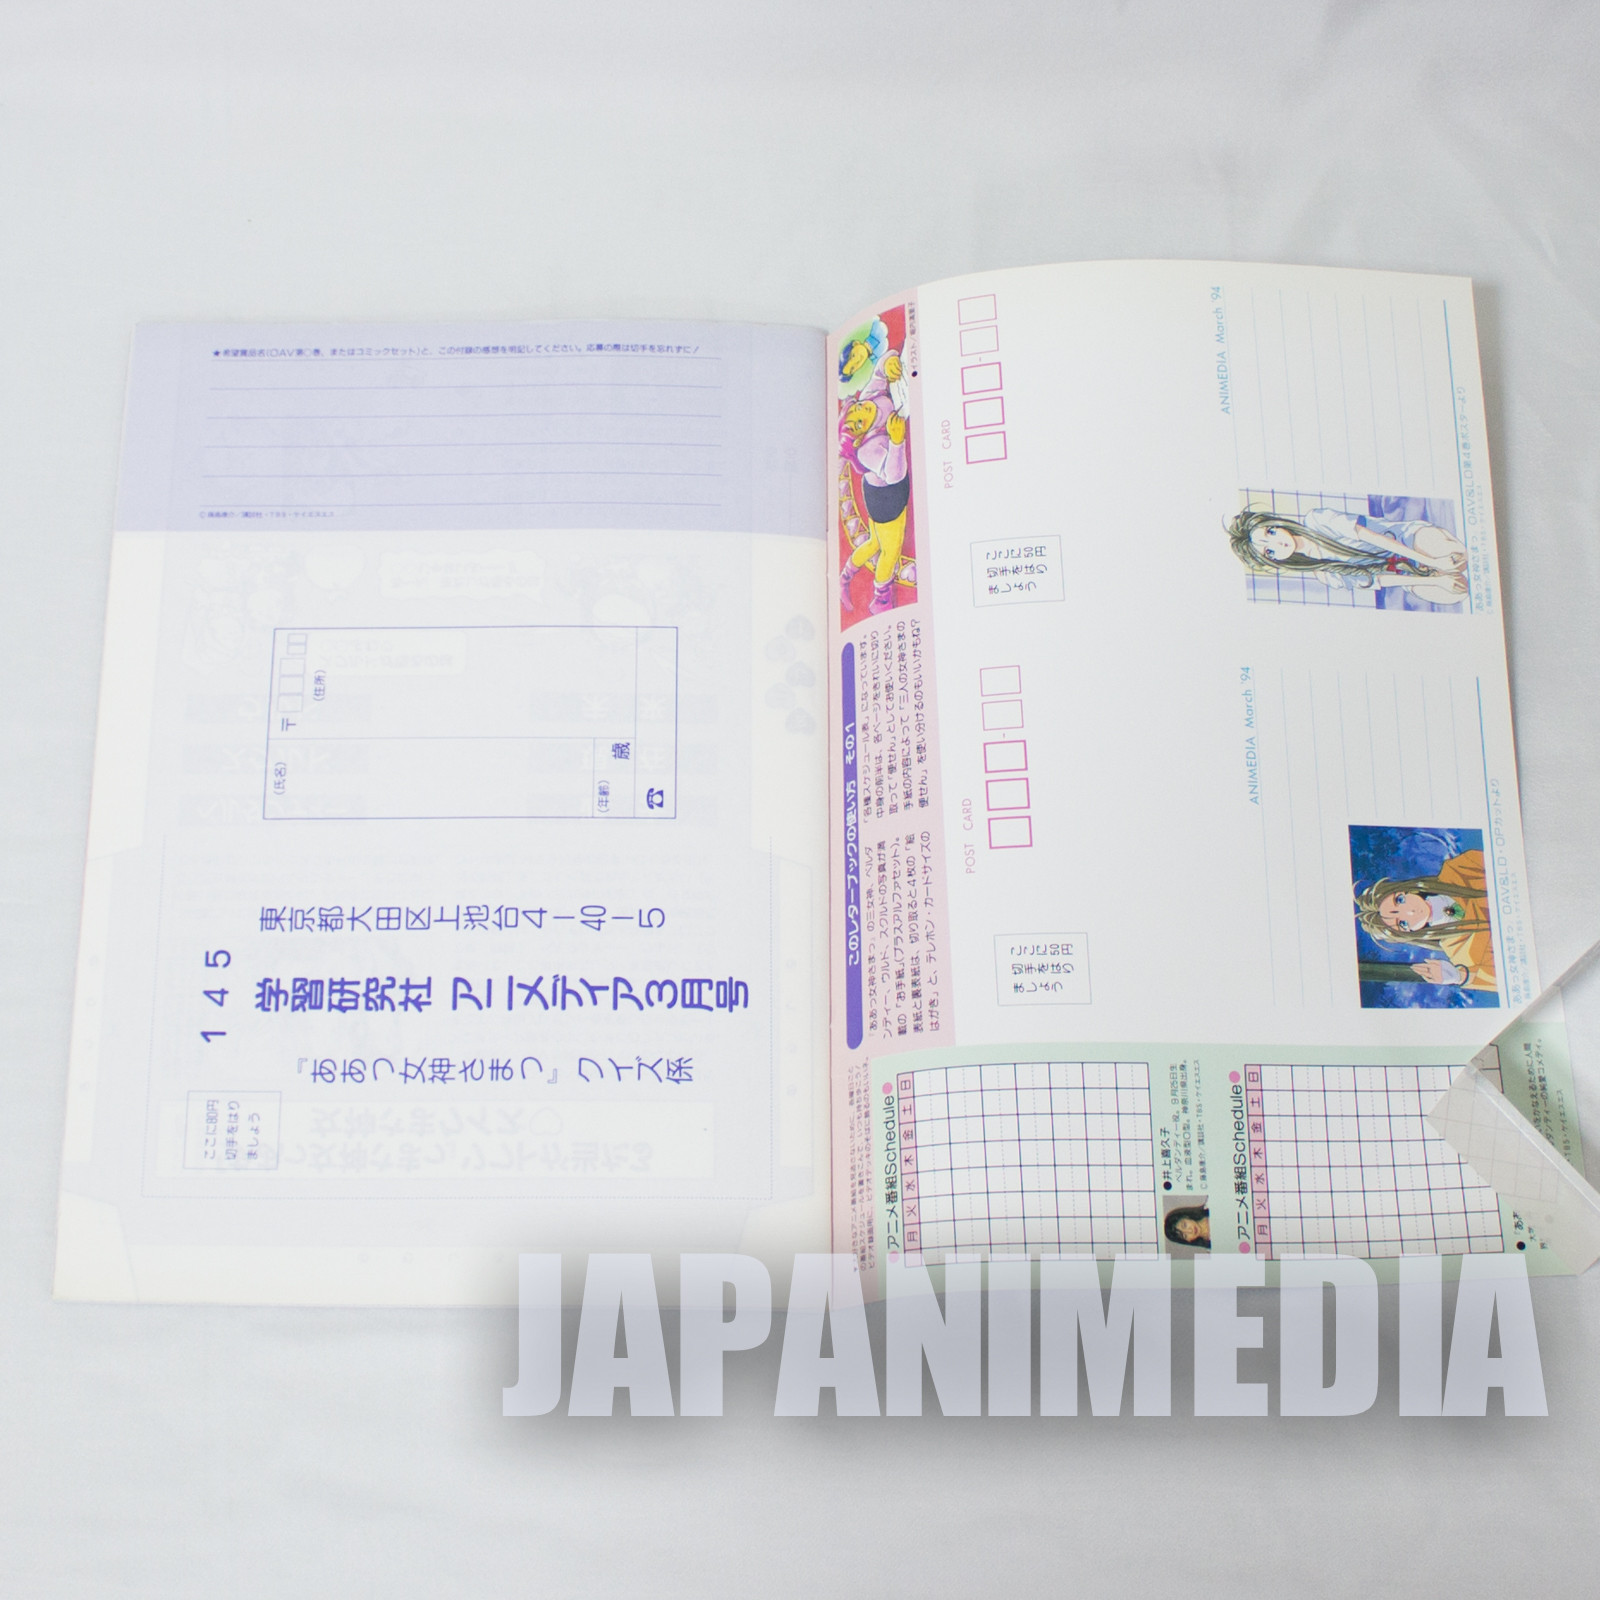 Variety Letter Book / Ah! My Goddess Animedia 1994 Mar JAPAN ANIME